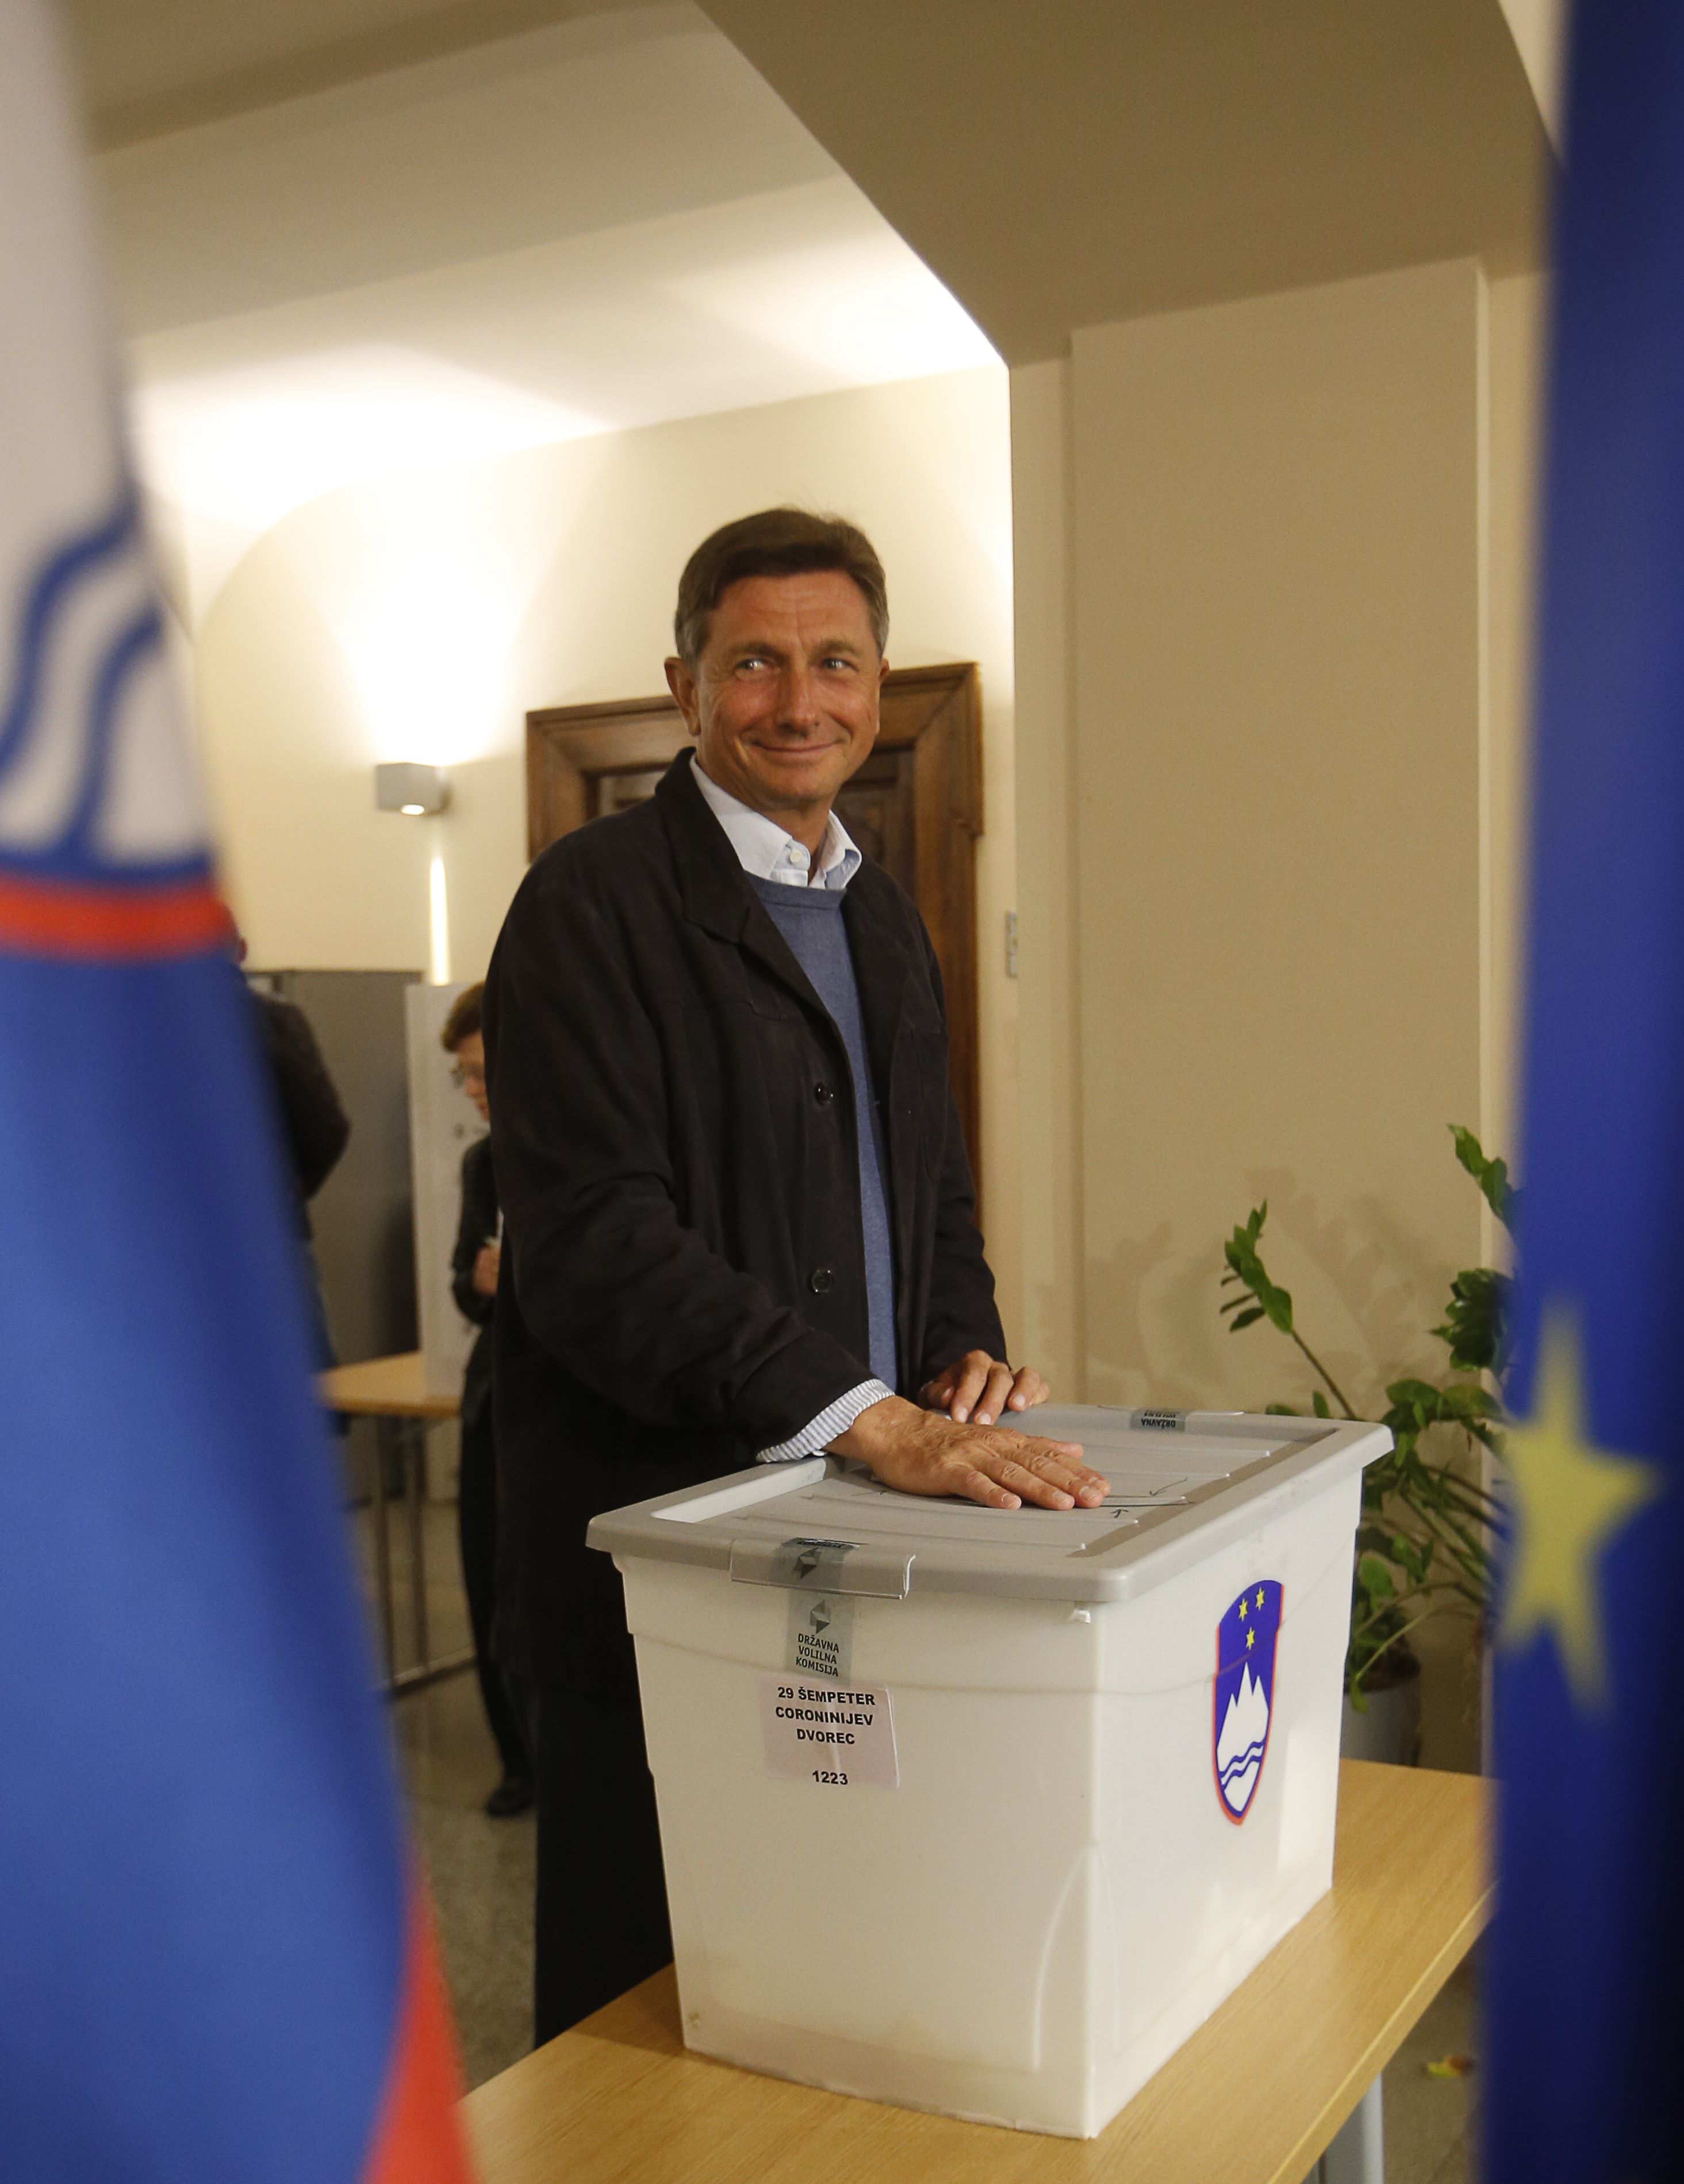 المرشح الرئاسي بوروت باهور يدلى بصوته فى انتخابات سلوفينيا